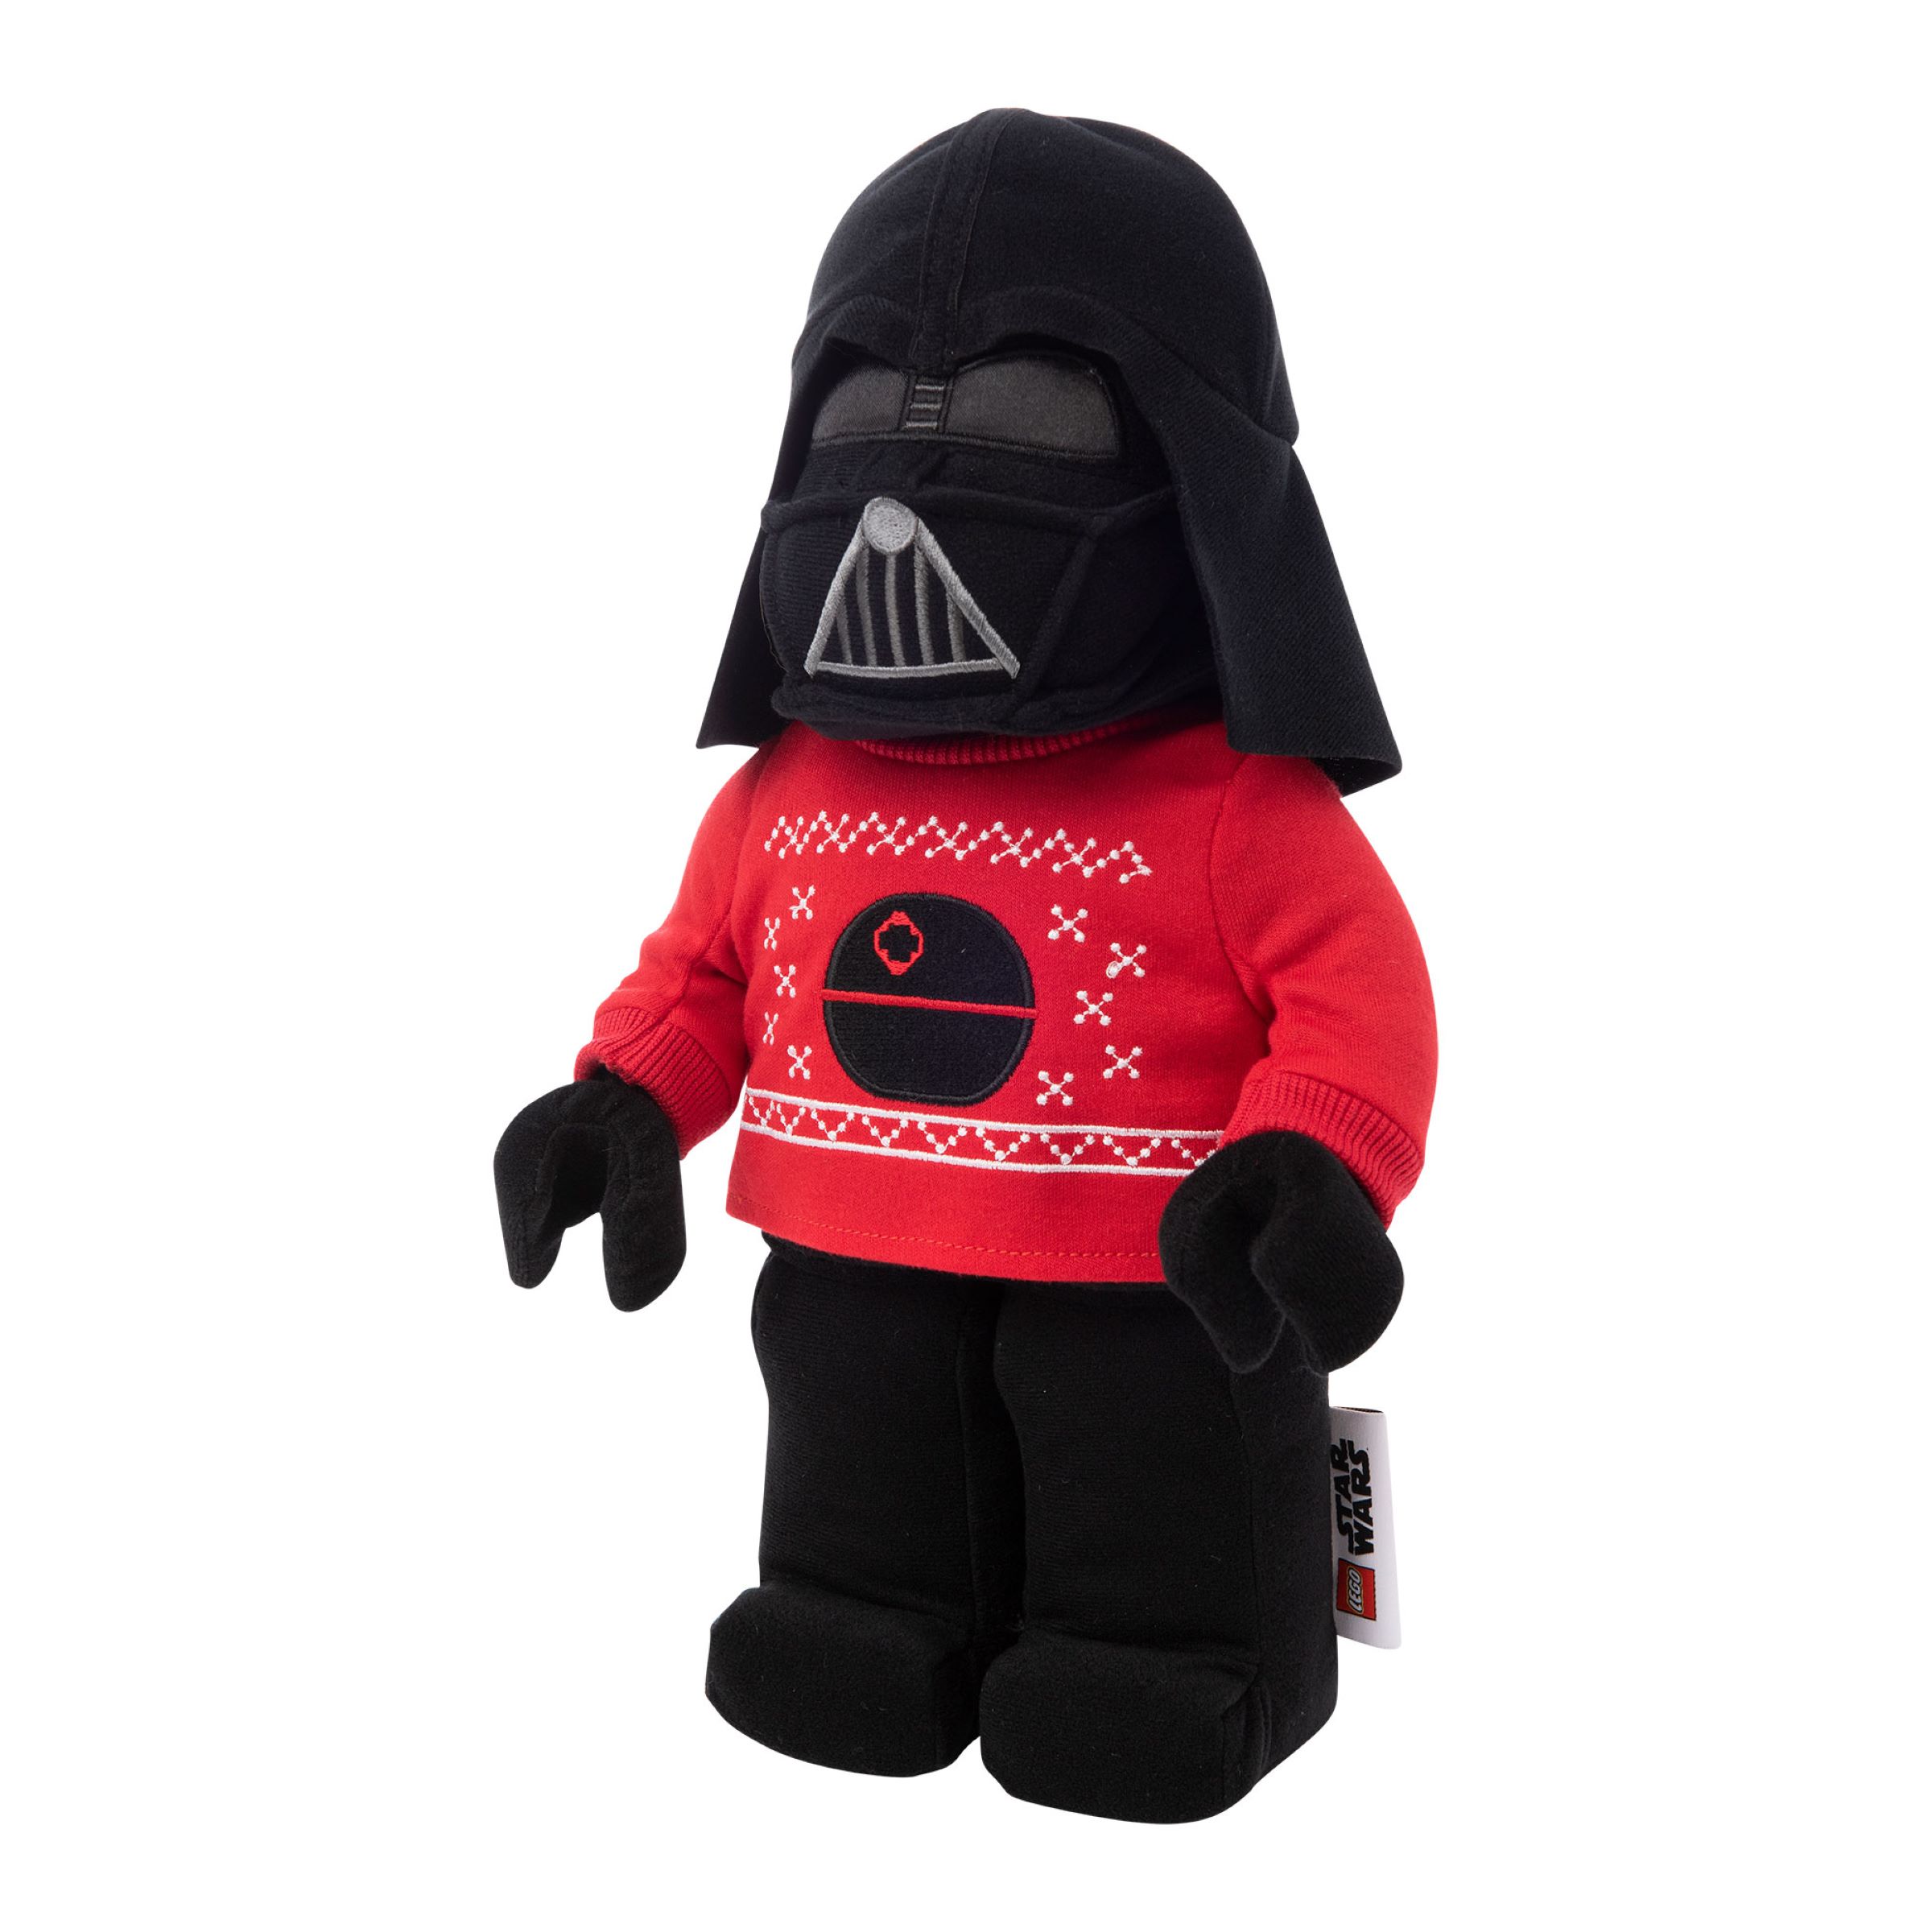 Darth Vader™ Holiday Plush 5007462, Star Wars™